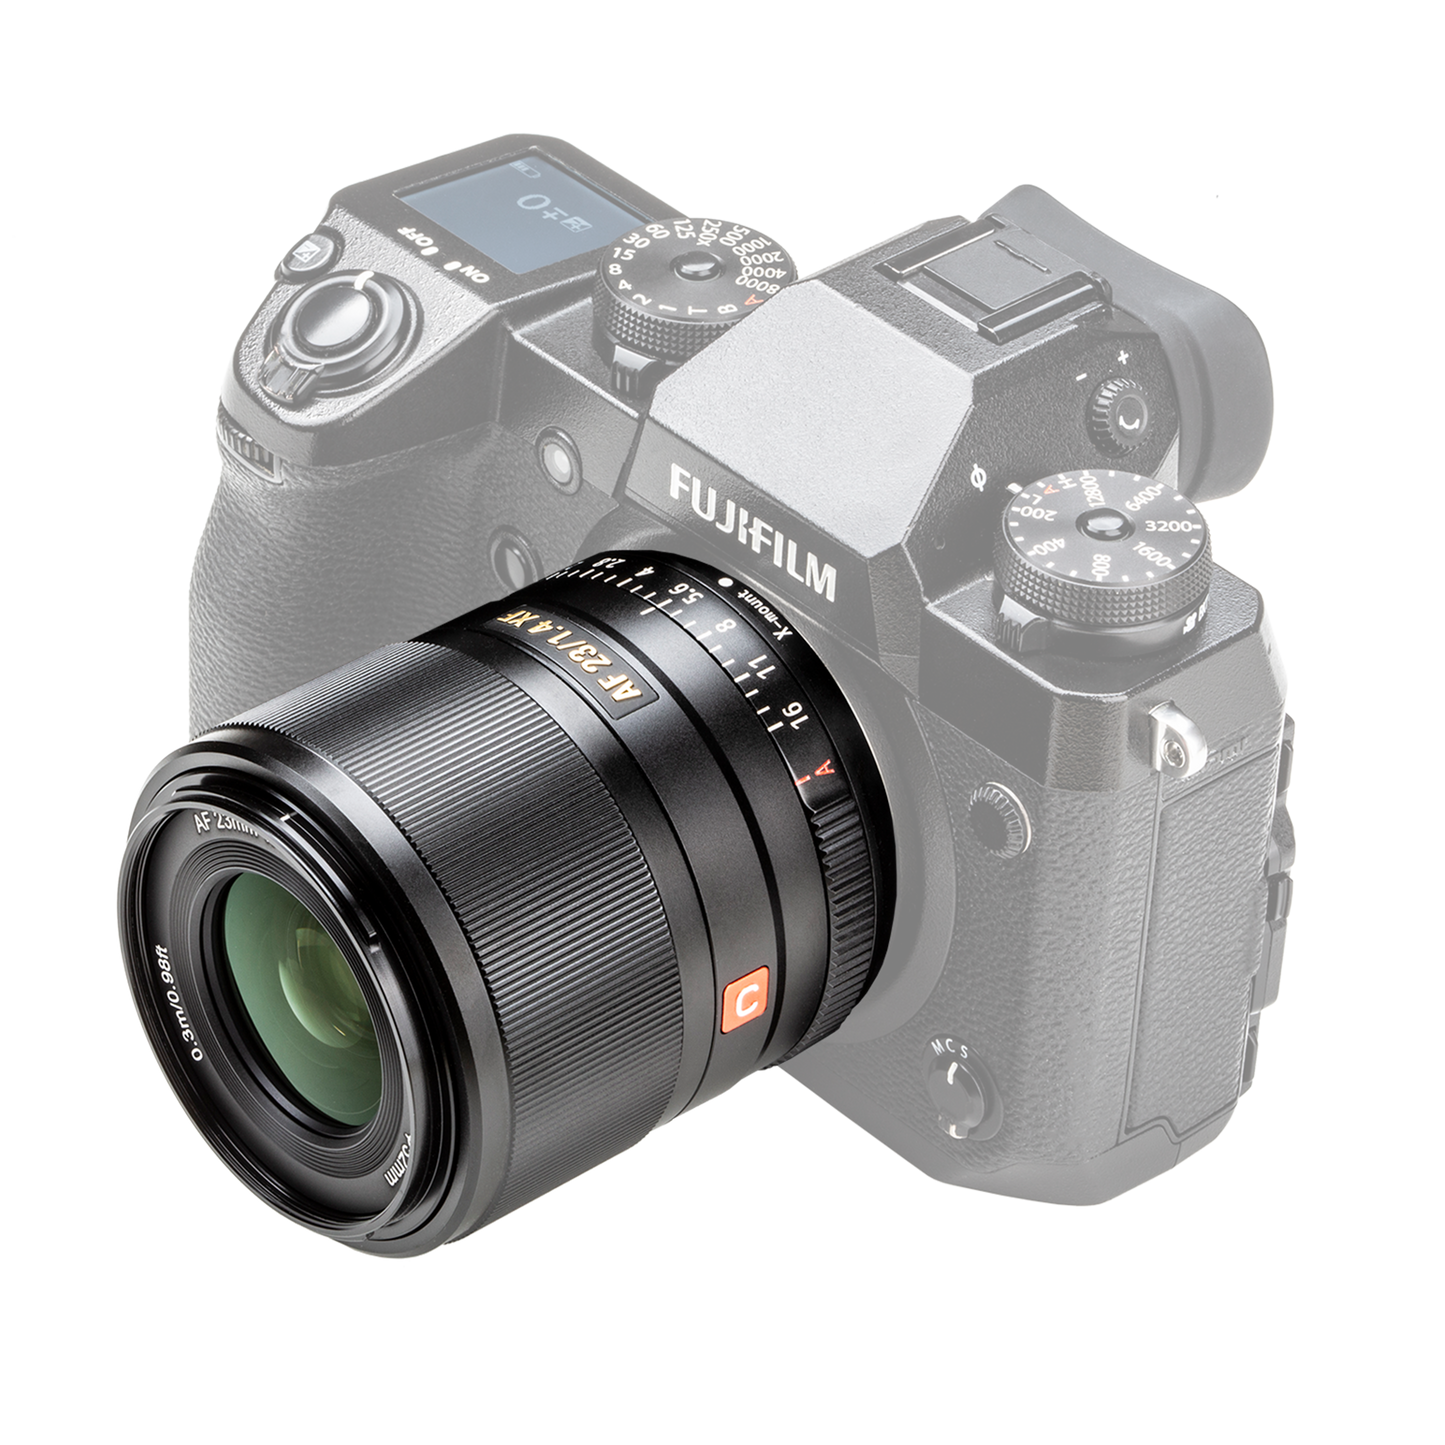 Viltrox lens FX-23mm f/1.4 with Fuji X-mount